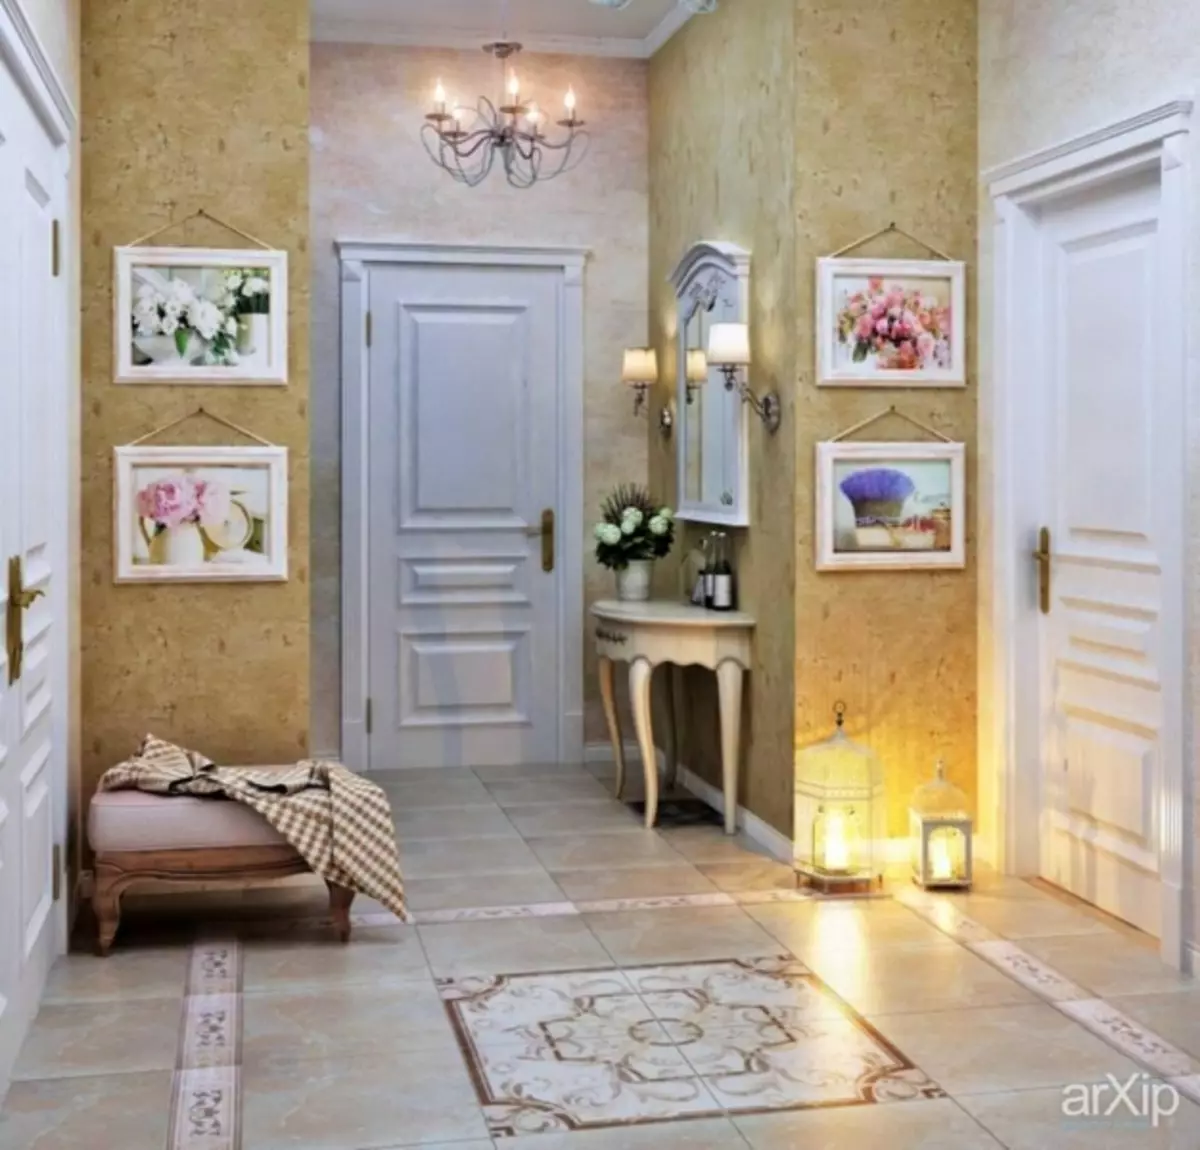 Provence Wallpaper: снимка в интериора, за кухненски стени, спални и хол, в комплекс Цвета, Страна и Прованс, Детски спътници, в коридора, видео